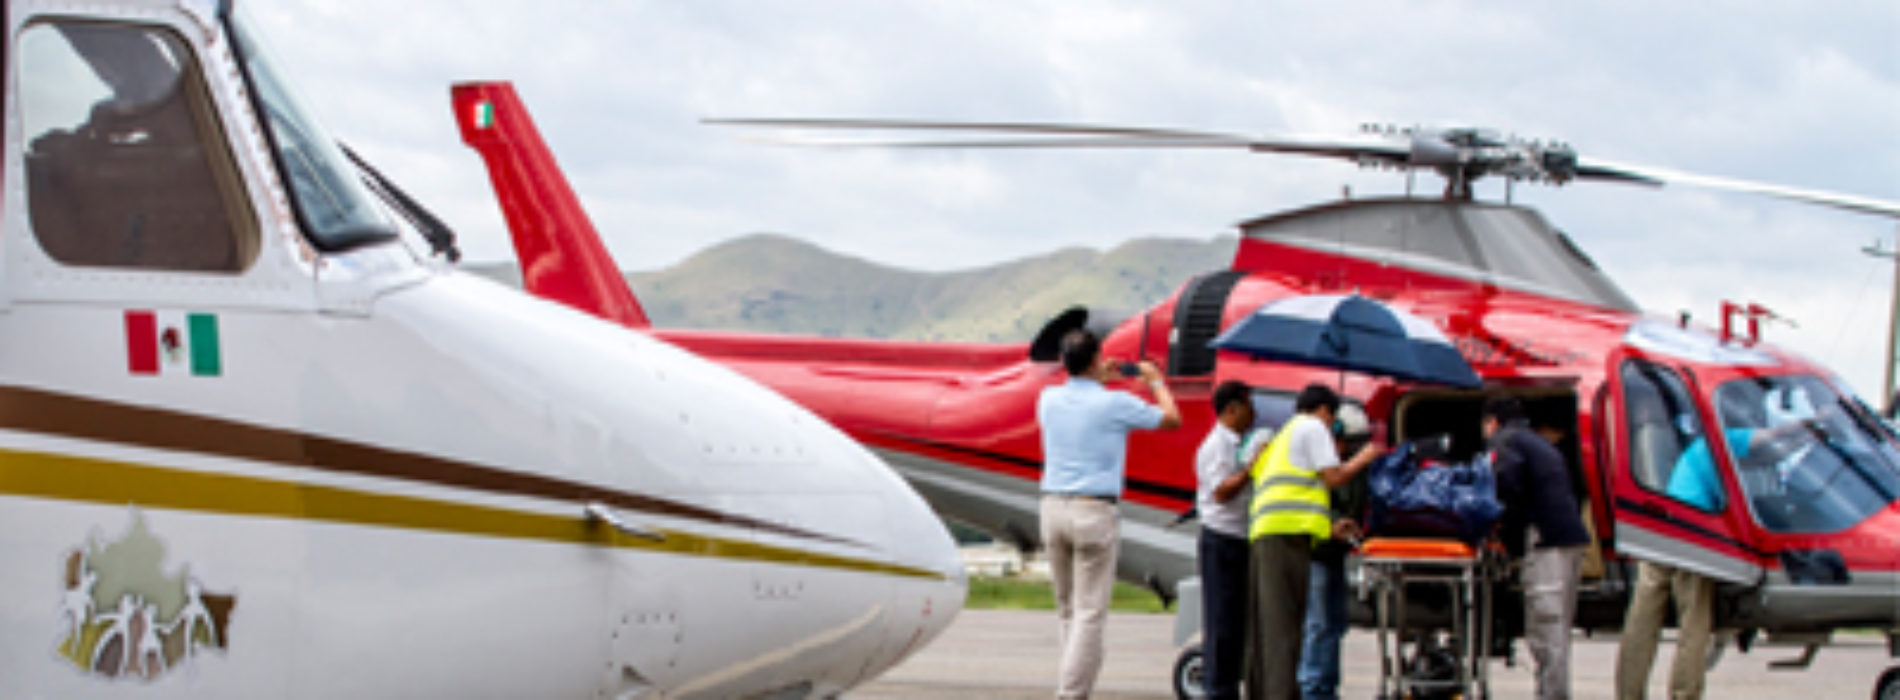 La ambulancia aérea del Gobierno de Oaxaca, salva la vida a más de mil personas: Gabino Cué